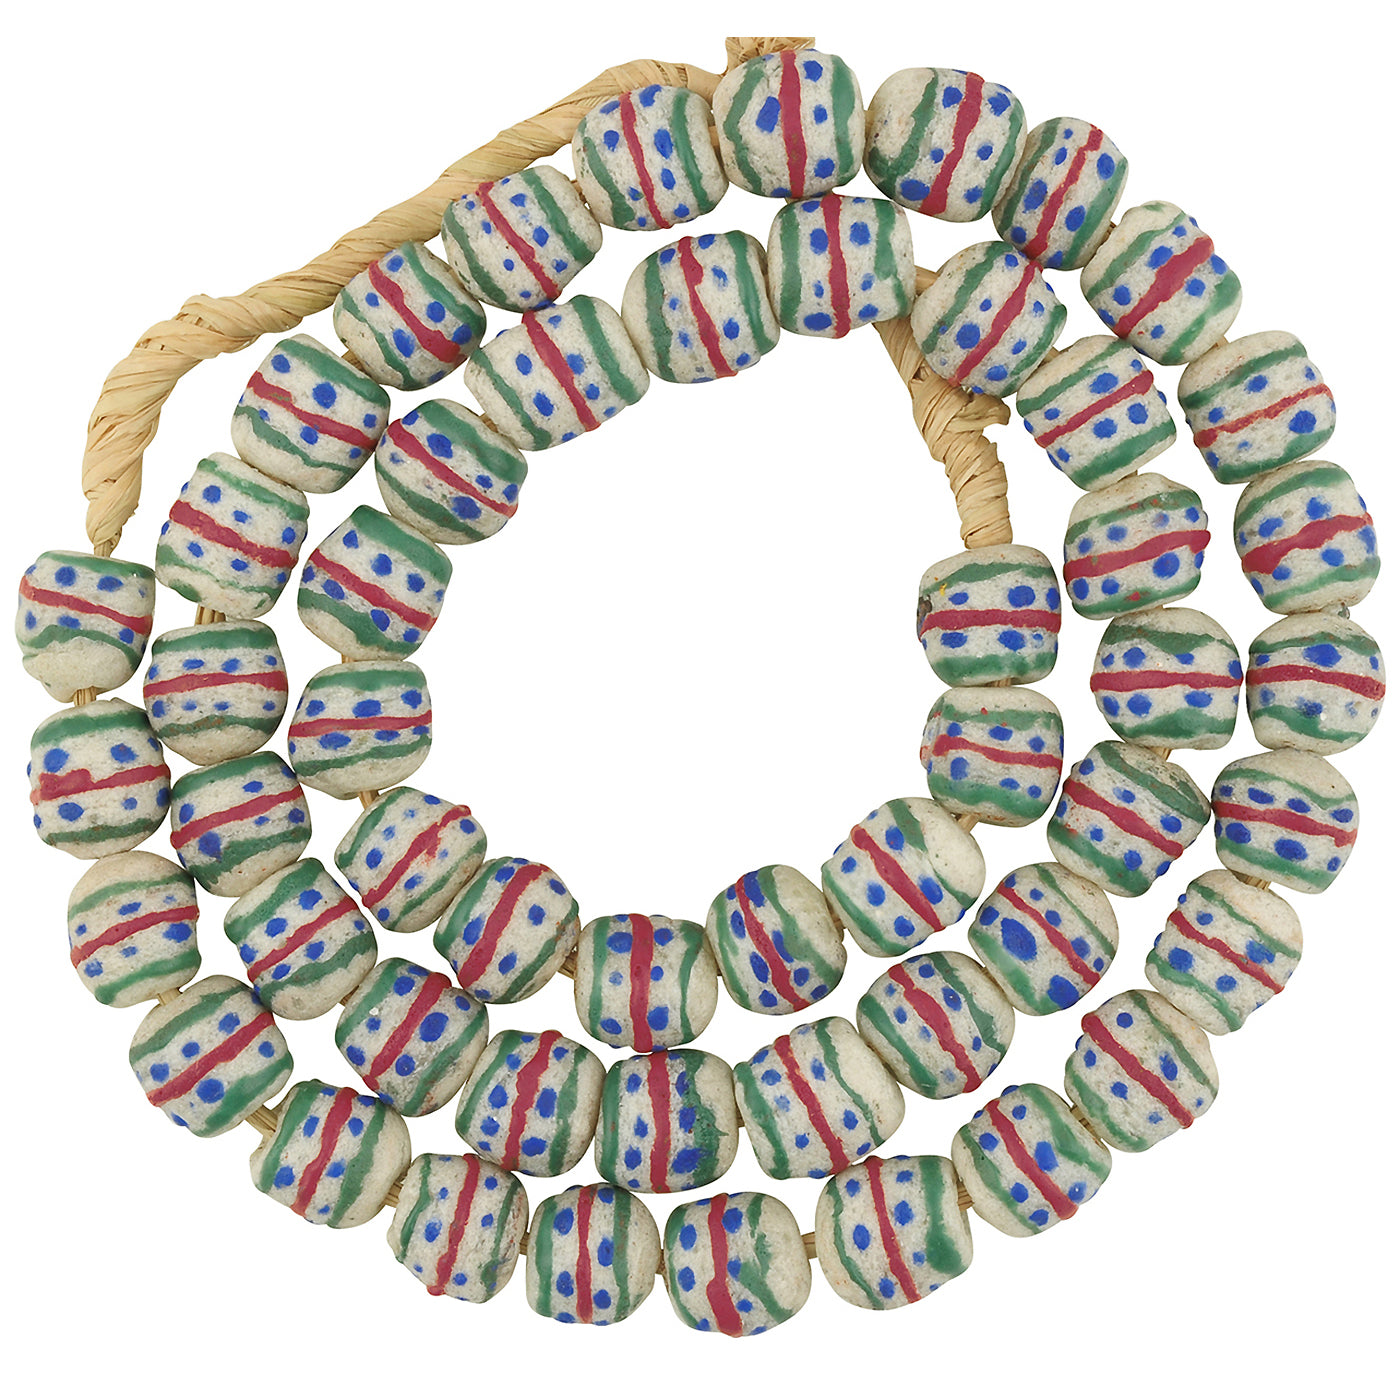 Afrikanische Perlen recyceltes Glaspulver Ghana Schmuck Tribal Halskette - Tribalgh